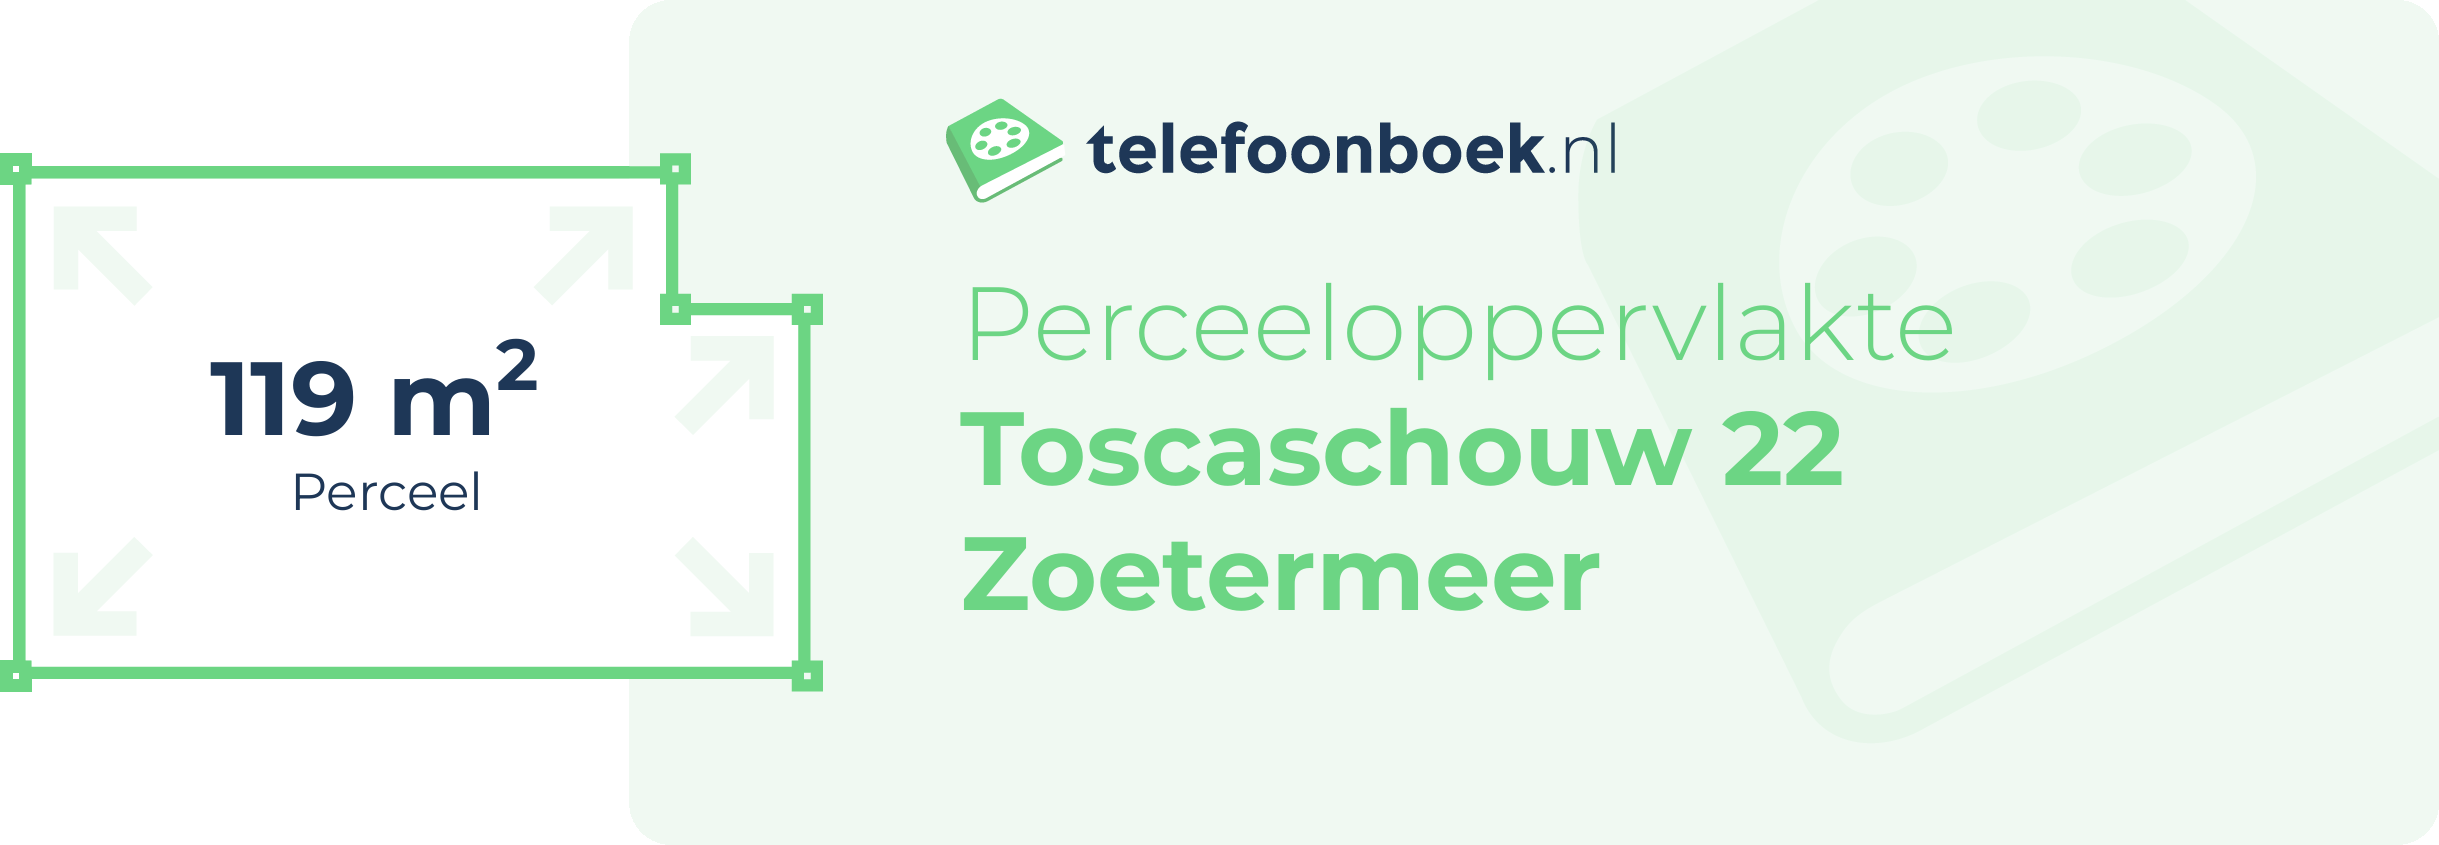 Perceeloppervlakte Toscaschouw 22 Zoetermeer